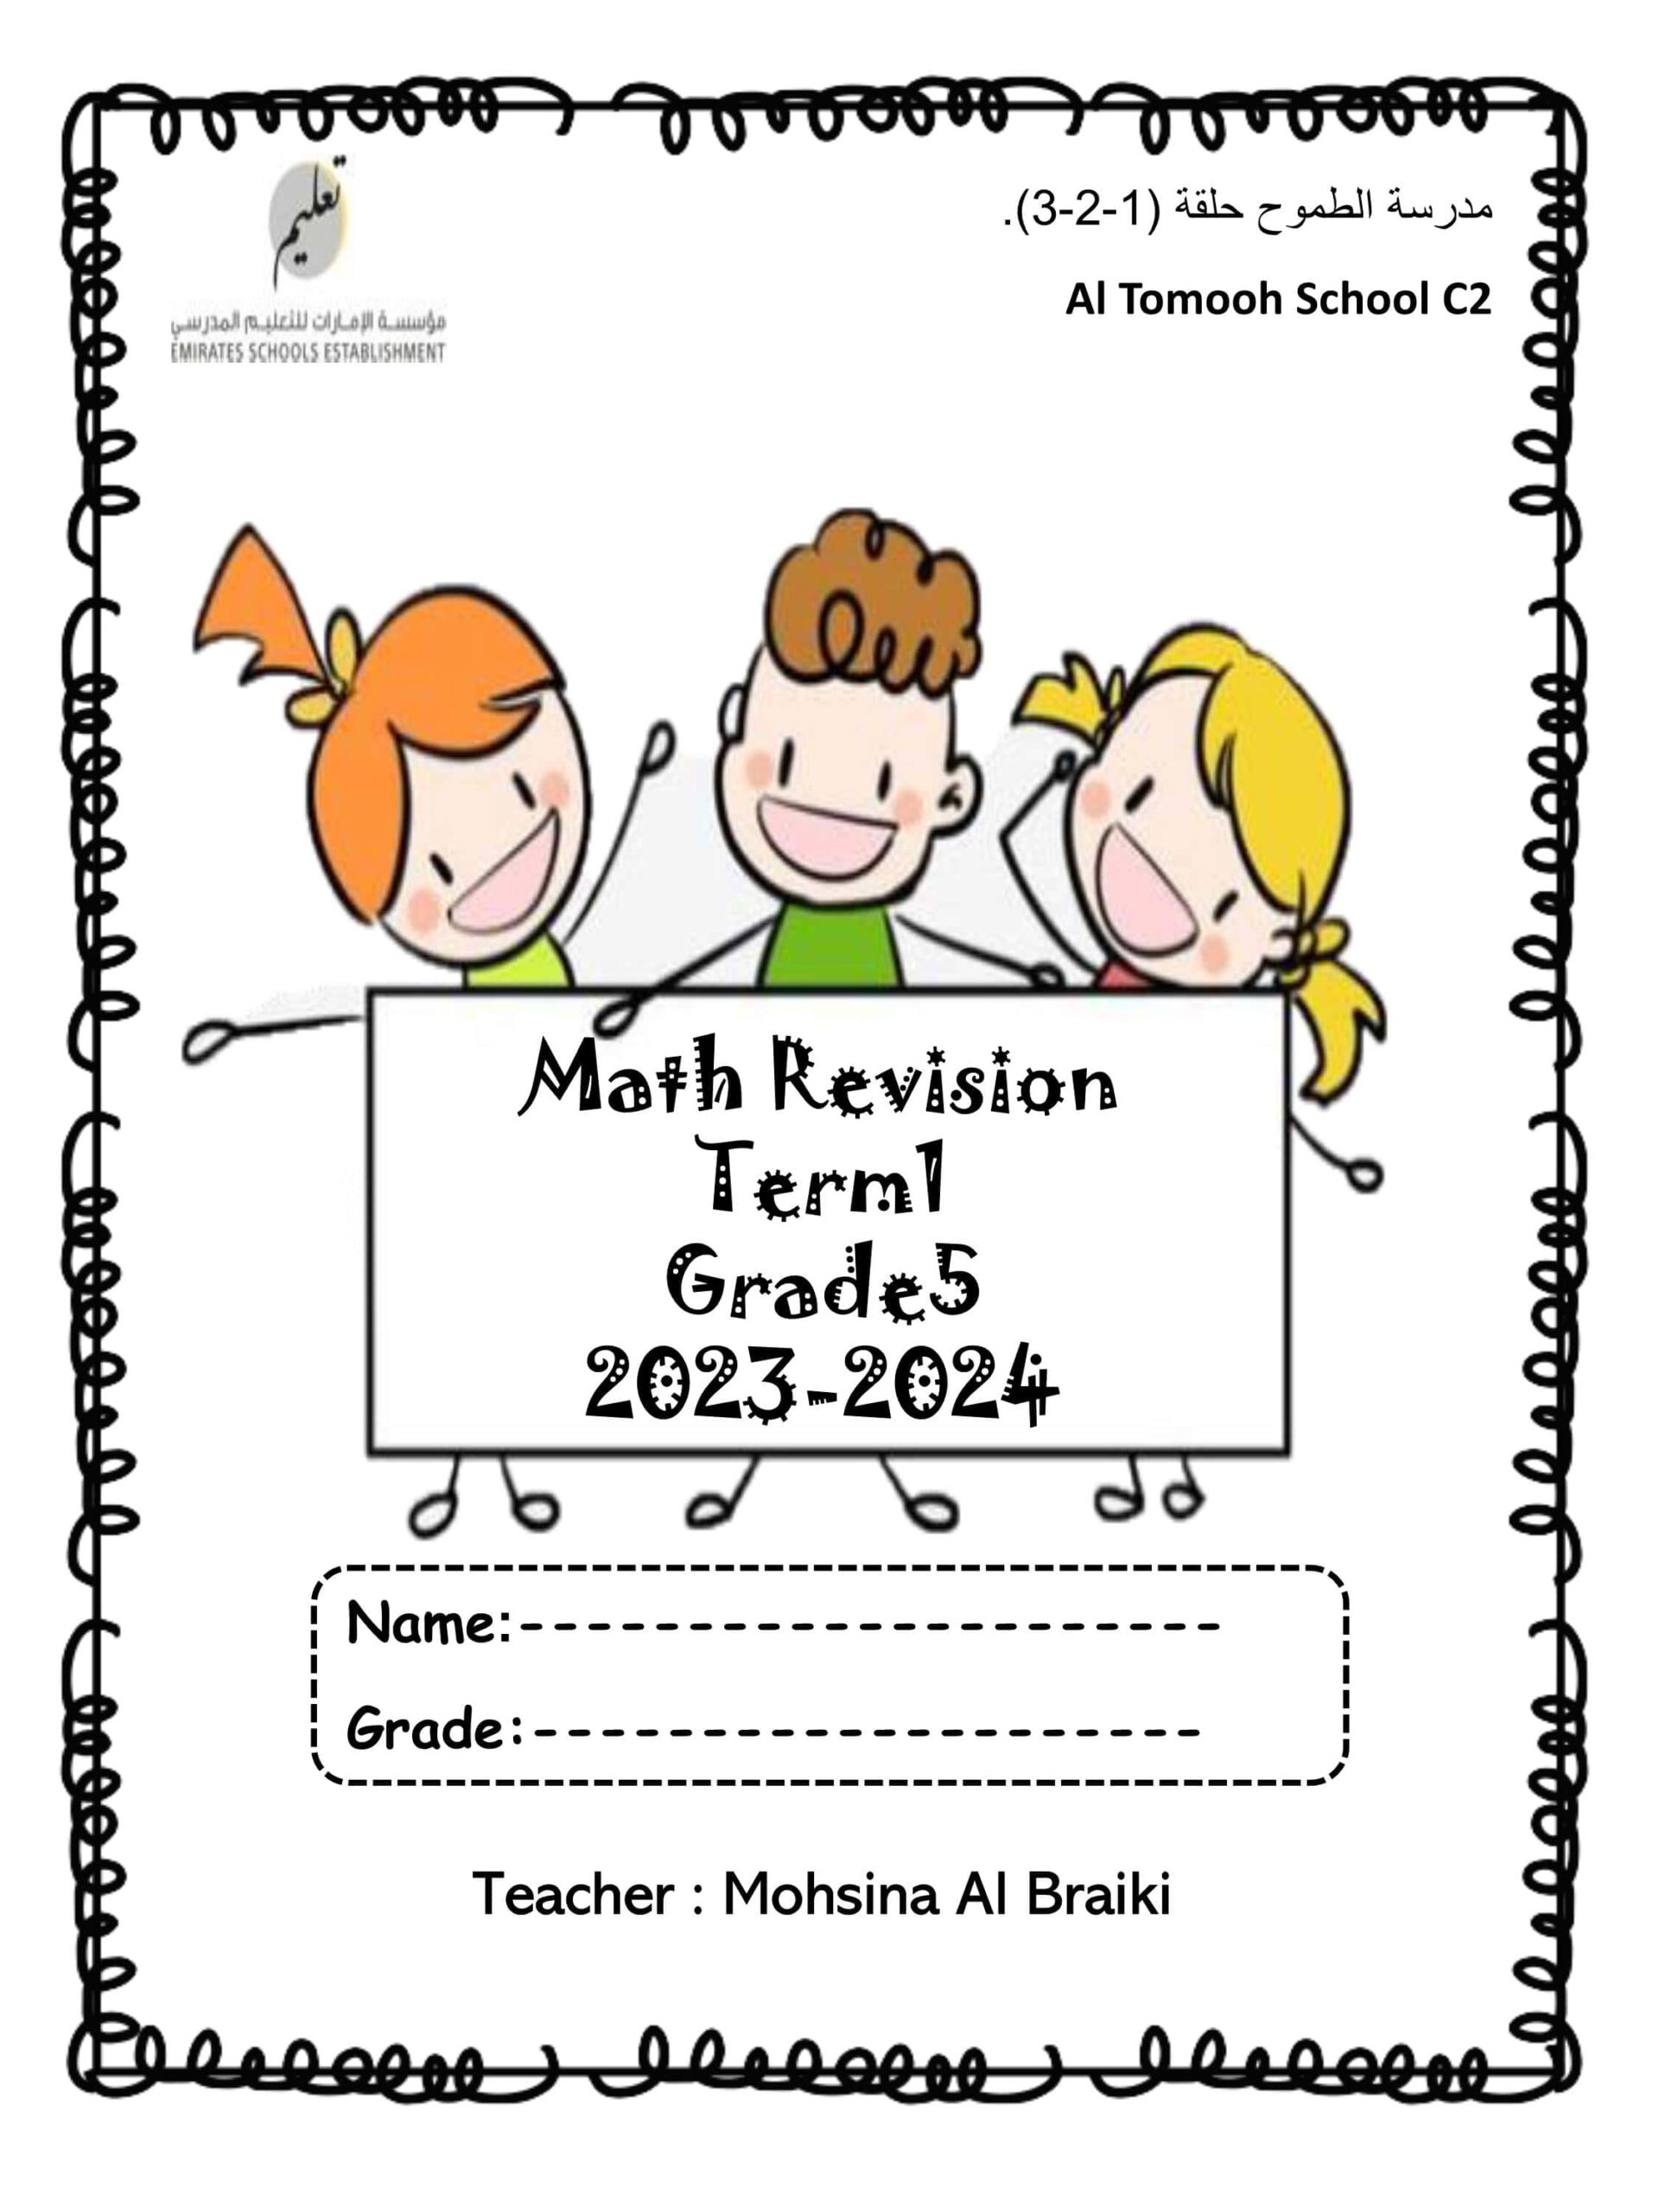 مراجعة صفحات هيكل امتحان الرياضيات المتكاملة الصف الخامس Reveal